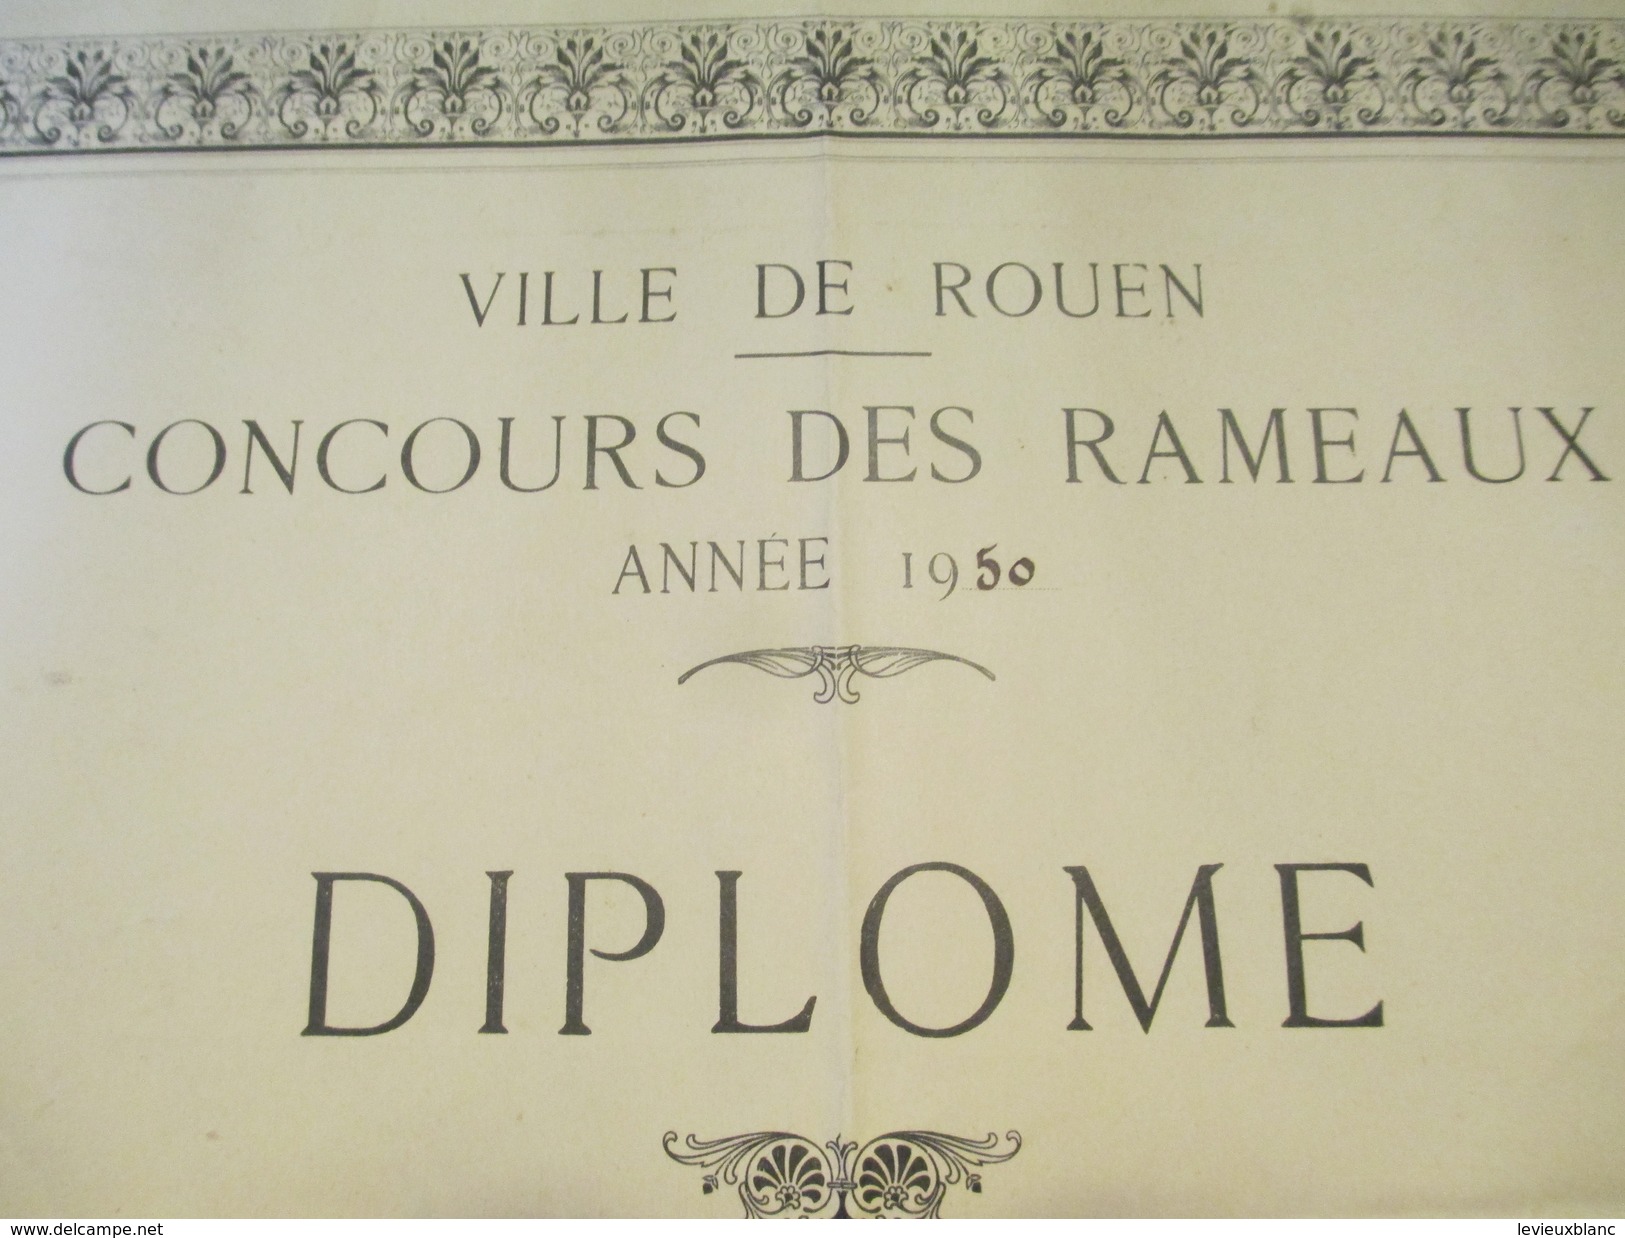 Diplôme / Agriculture/ROUEN/Concours Des Rameaux/Prix D'Honneur Moutons/DUJARDIN/Longchamps/1950   DIP172 - Diploma's En Schoolrapporten